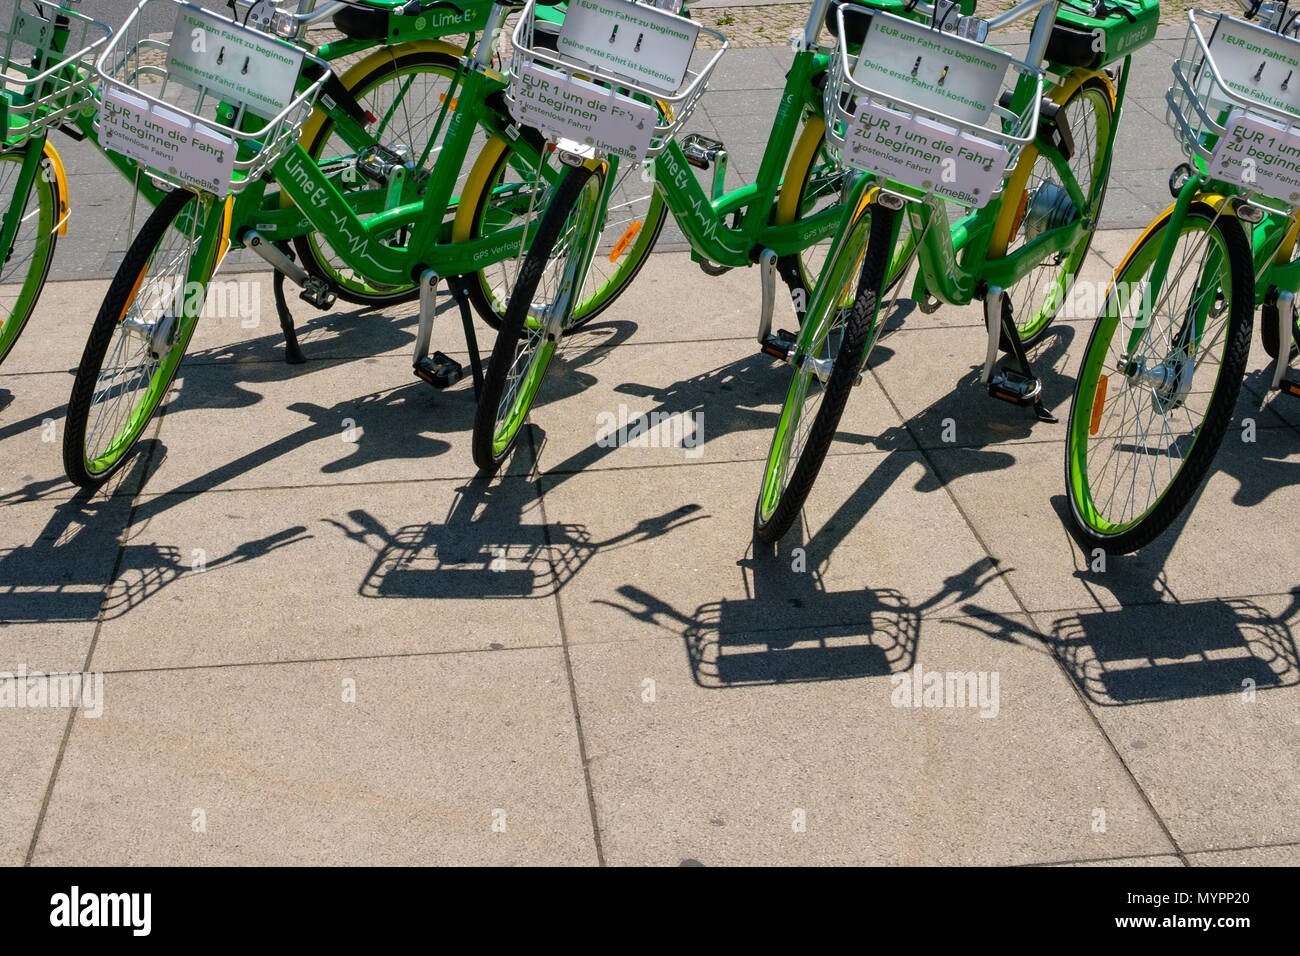 Berlin, Deutschland - Juni 2018: Viele elektrische Fahrräder der öffentlichen Bike-sharing Firma LimeBike in Berlin, Deutschland Stockfoto